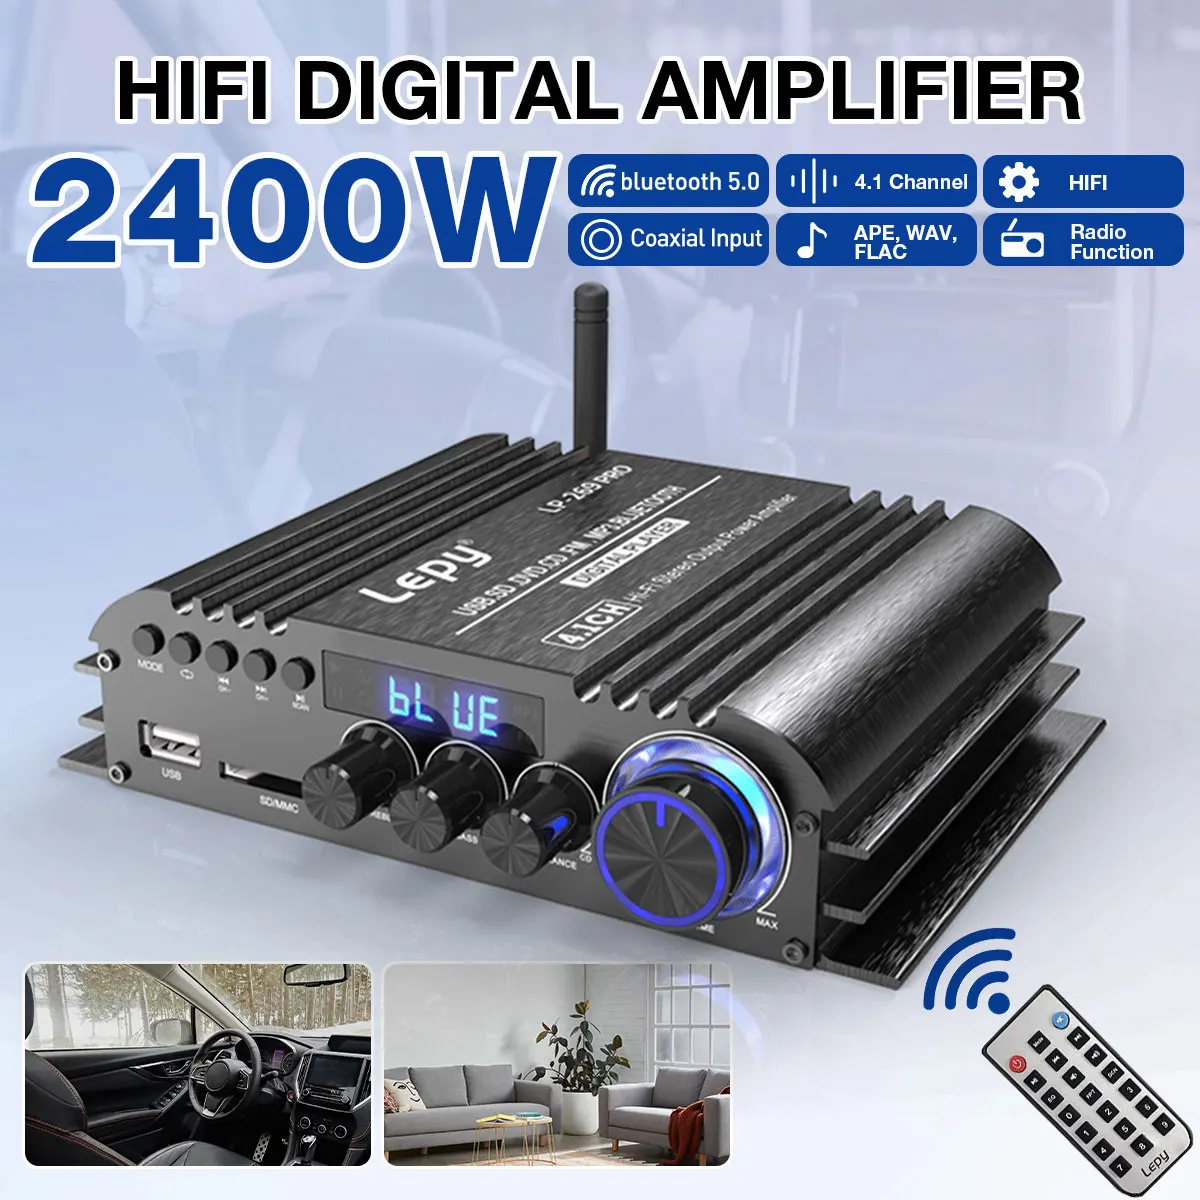 4*600W 4.1 Channel HiFi Digital bluetooth Wireless Power Amplifier Car Audio Stereo Speakers Bass Amplifier FM APE WAV FLAC USB